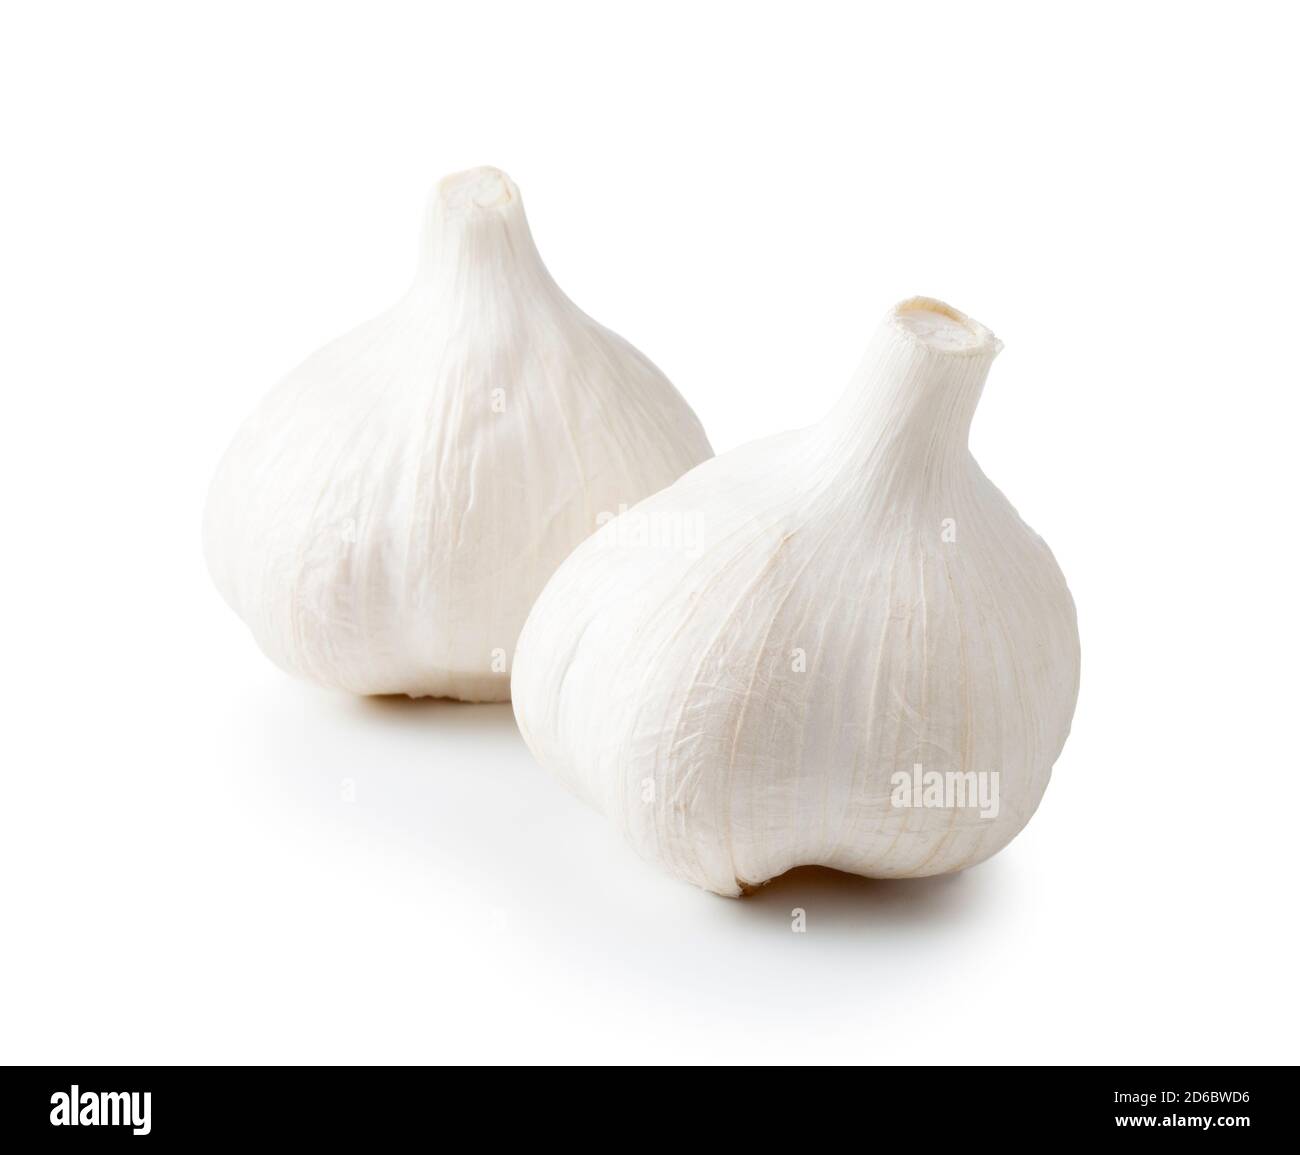 Garlic isolated on white background. Stock Photo